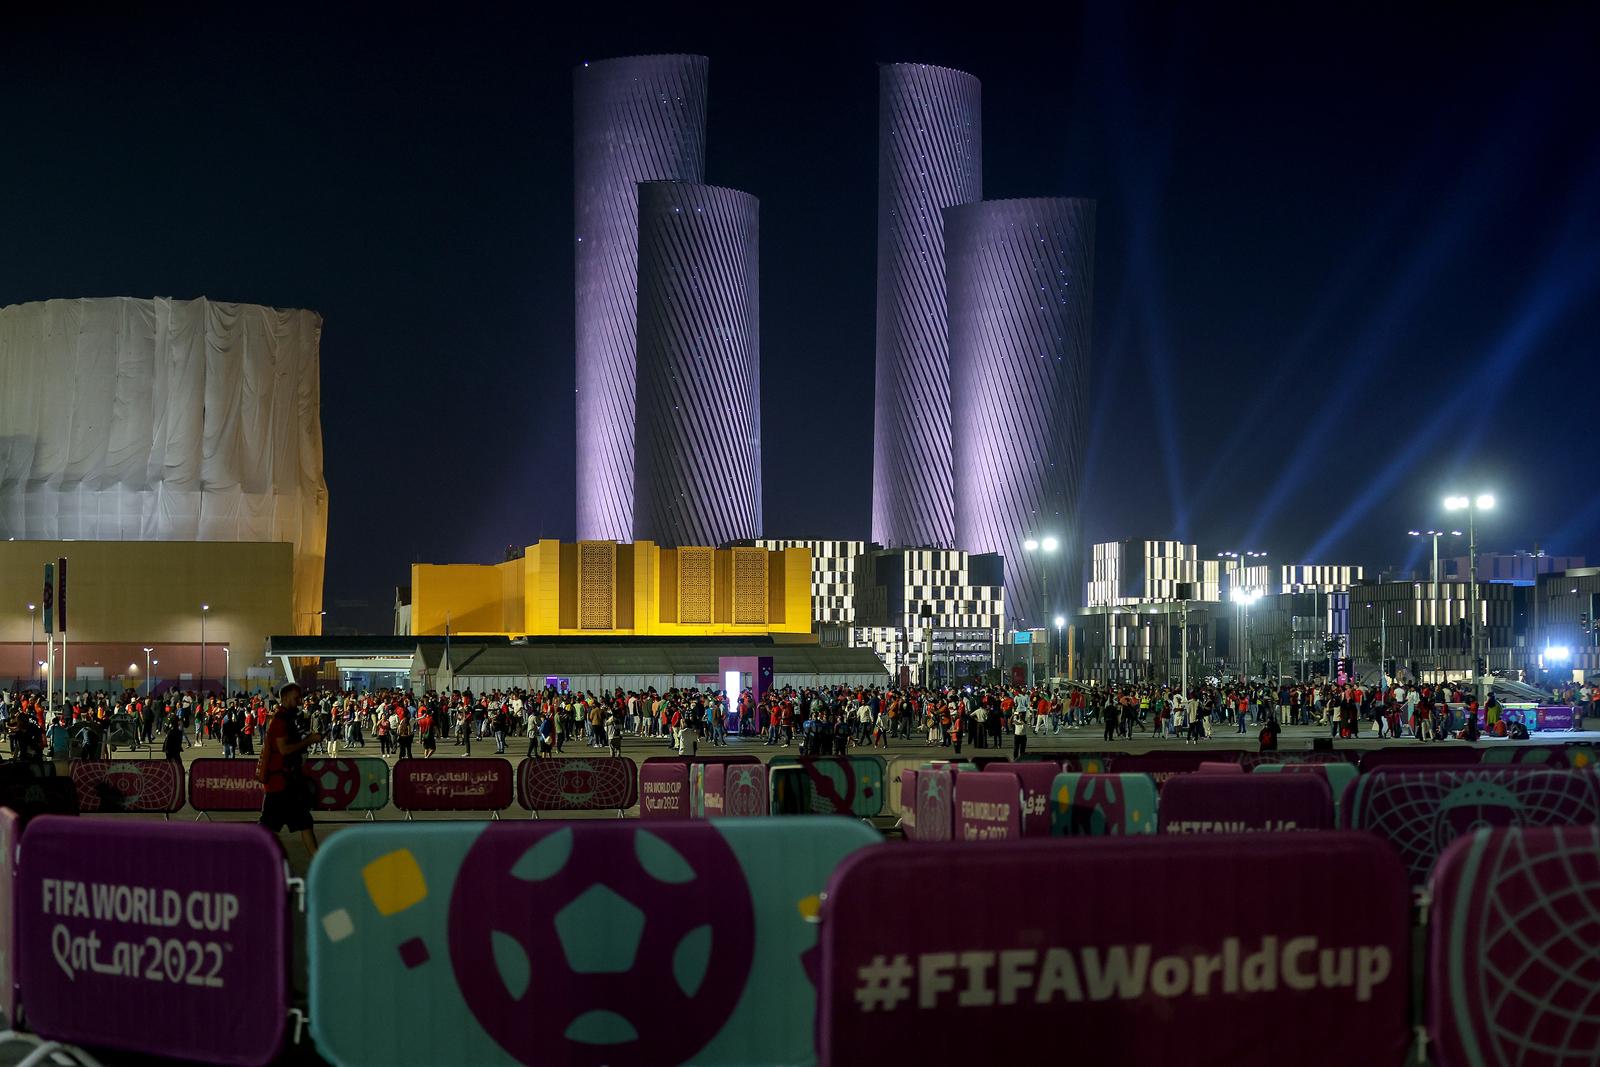 07.12.2022., Lusail, Katar - FIFA Svjetsko prvenstvo Katar 2022. Lusail Plaza neboderi izgradjeni su 2022. godine prije Svjetskog prvenstva i jedna su od najvisih zgrada u Kataru. Dva nebodera visoka su 70 katova, a dva 50 katova. Photo: Igor Kralj/PIXSELL